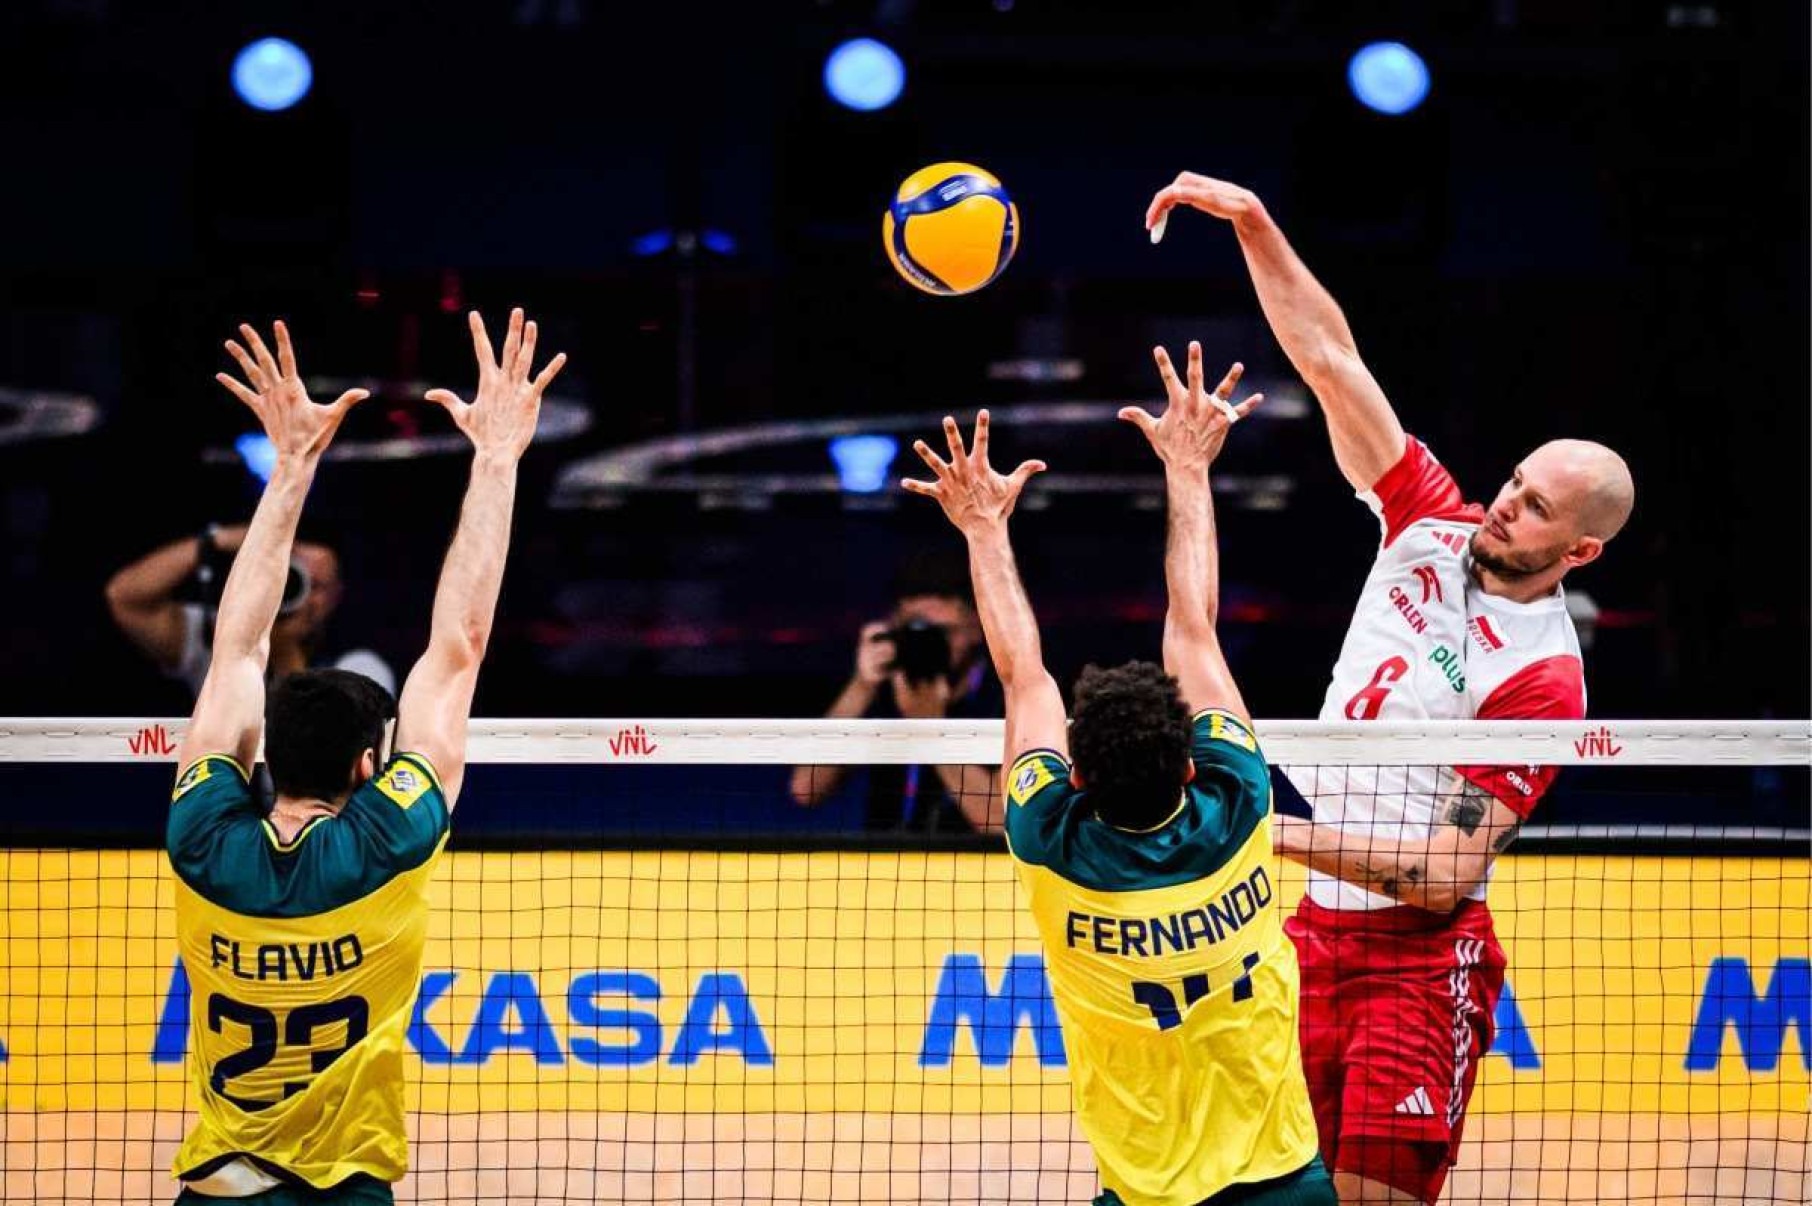 Brasil cai para a Polônia em duelo das quartas de final da VNL